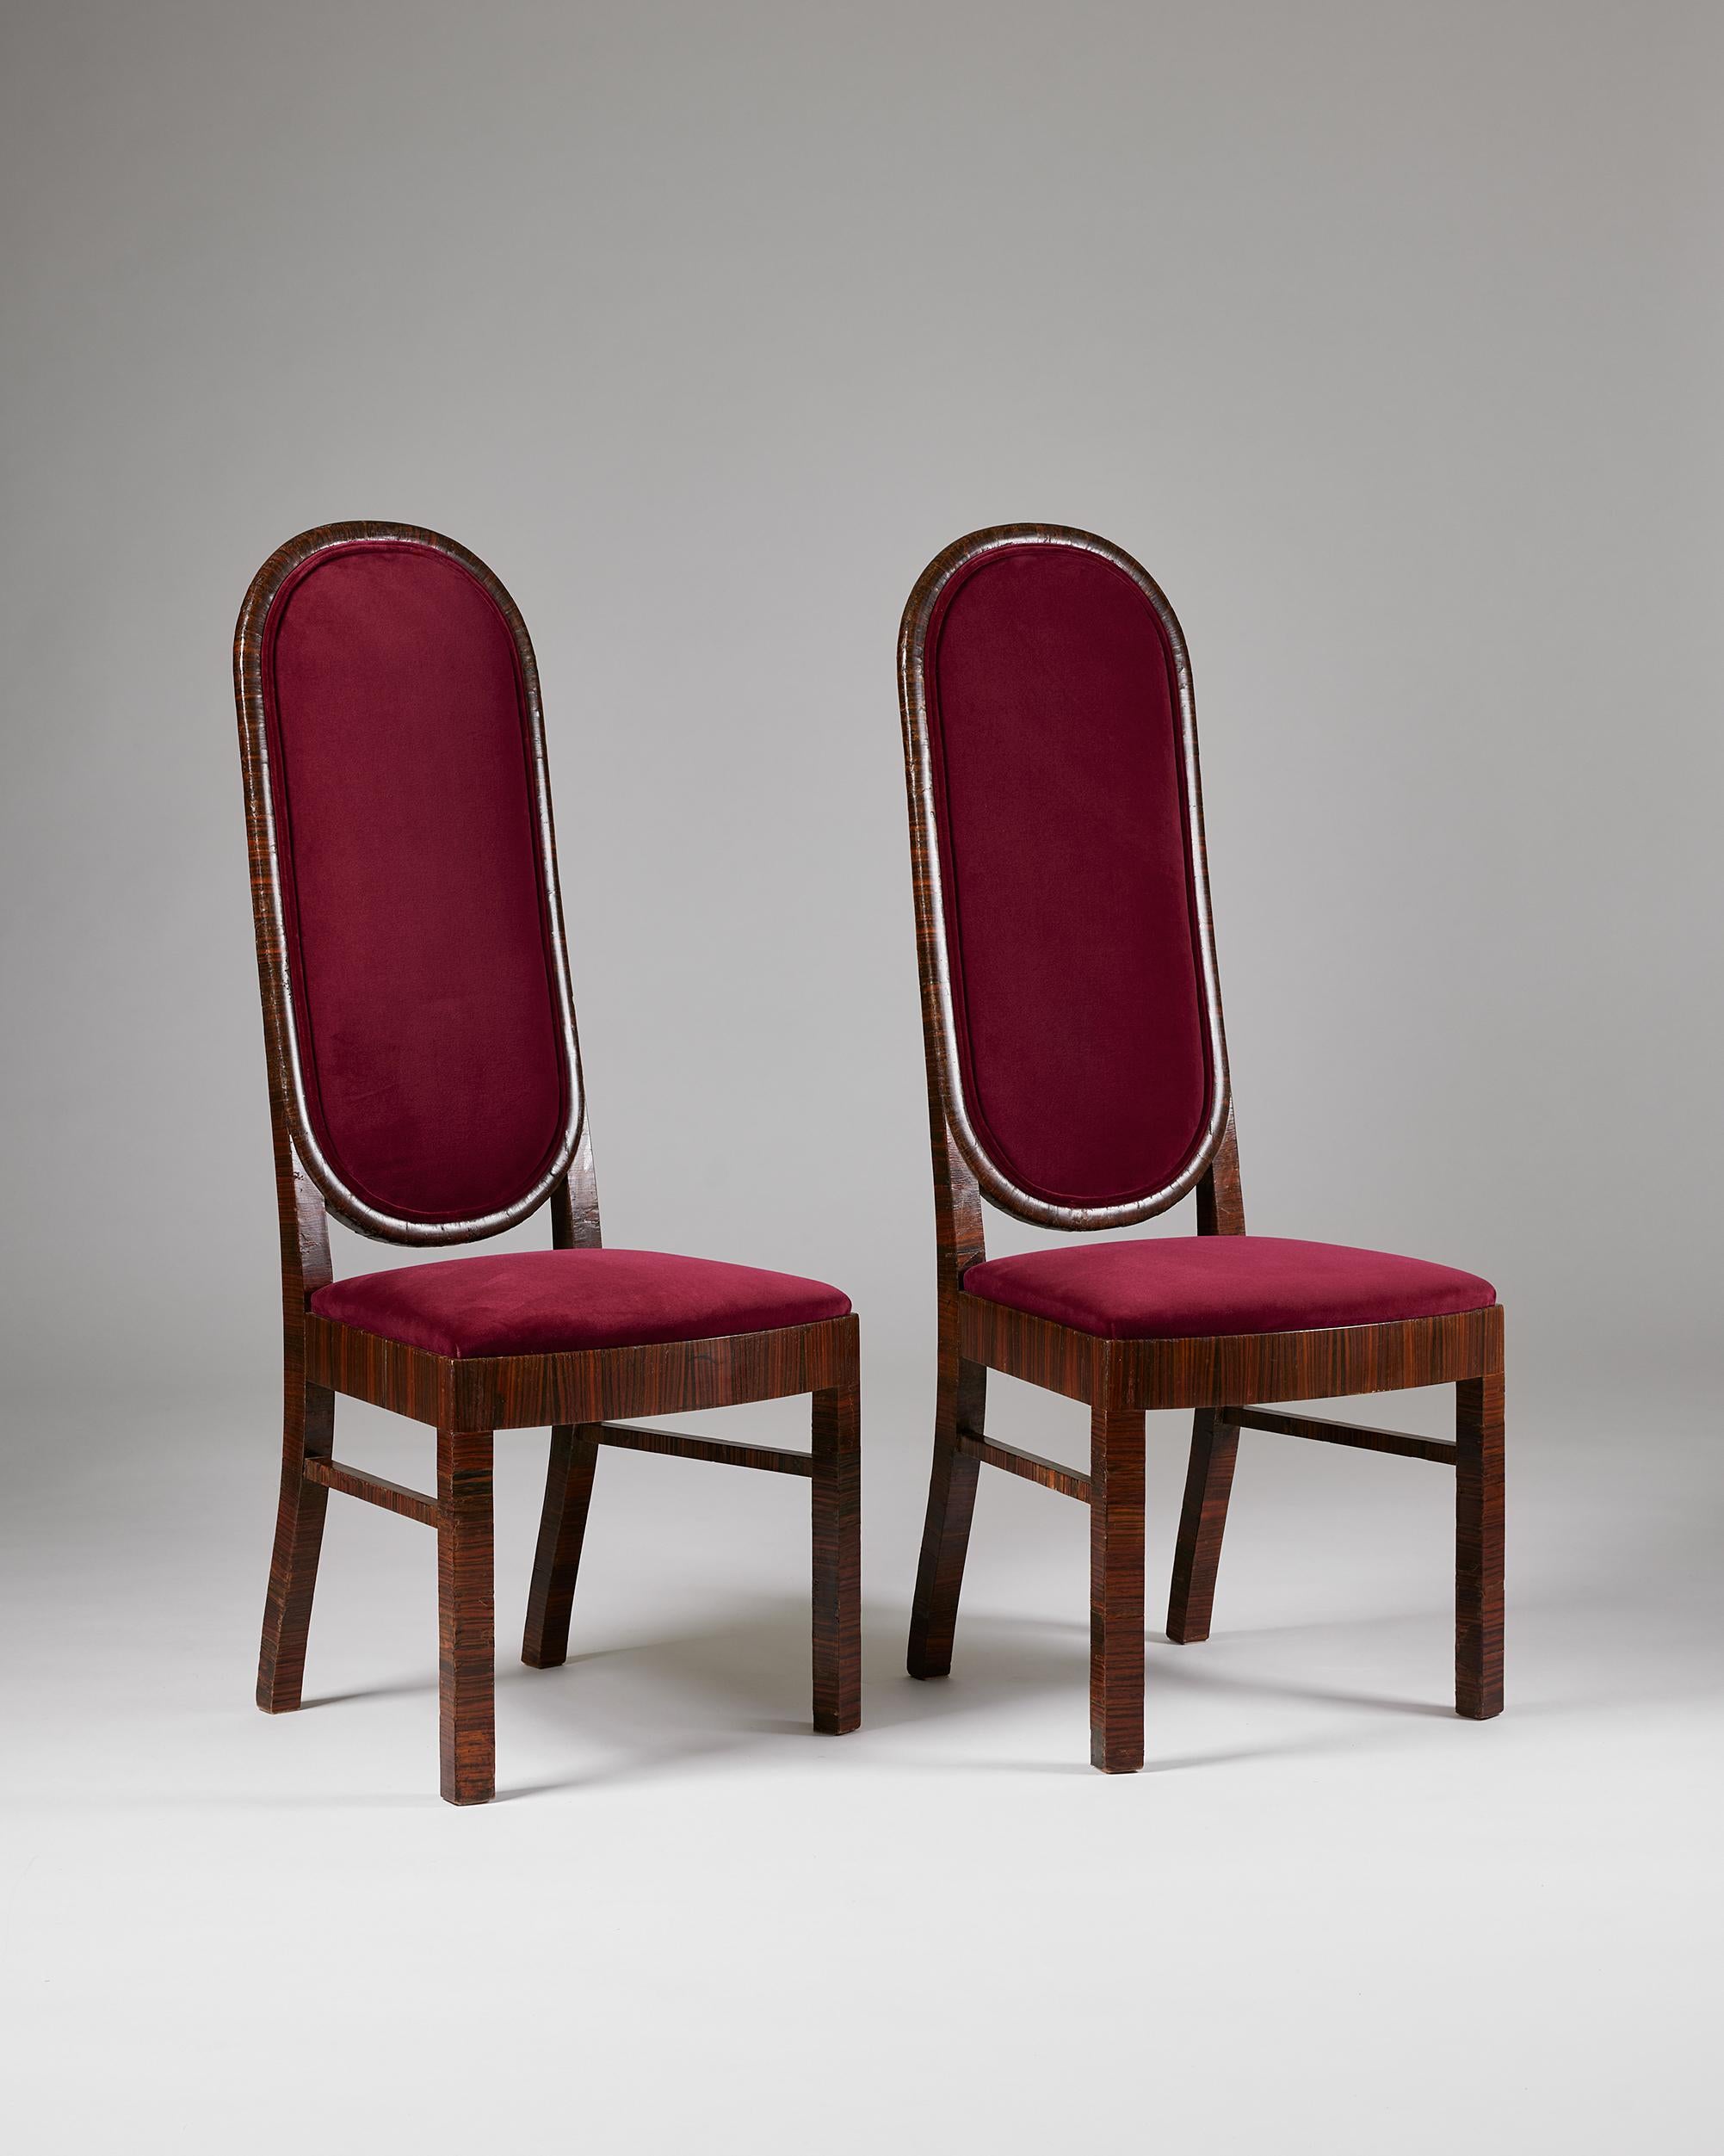 Ein Paar Esszimmerstühle, entworfen von Axel Einar Hjorth für Nordiska Kompaniet,
Schweden, 1934.

Furniertes Makassar-Ebenholz und Samt.

Gestempelt.

Provenienz: Die Stühle sollen im Restaurant des Sportpalastes an der Sankt Eriksplan Brücke in